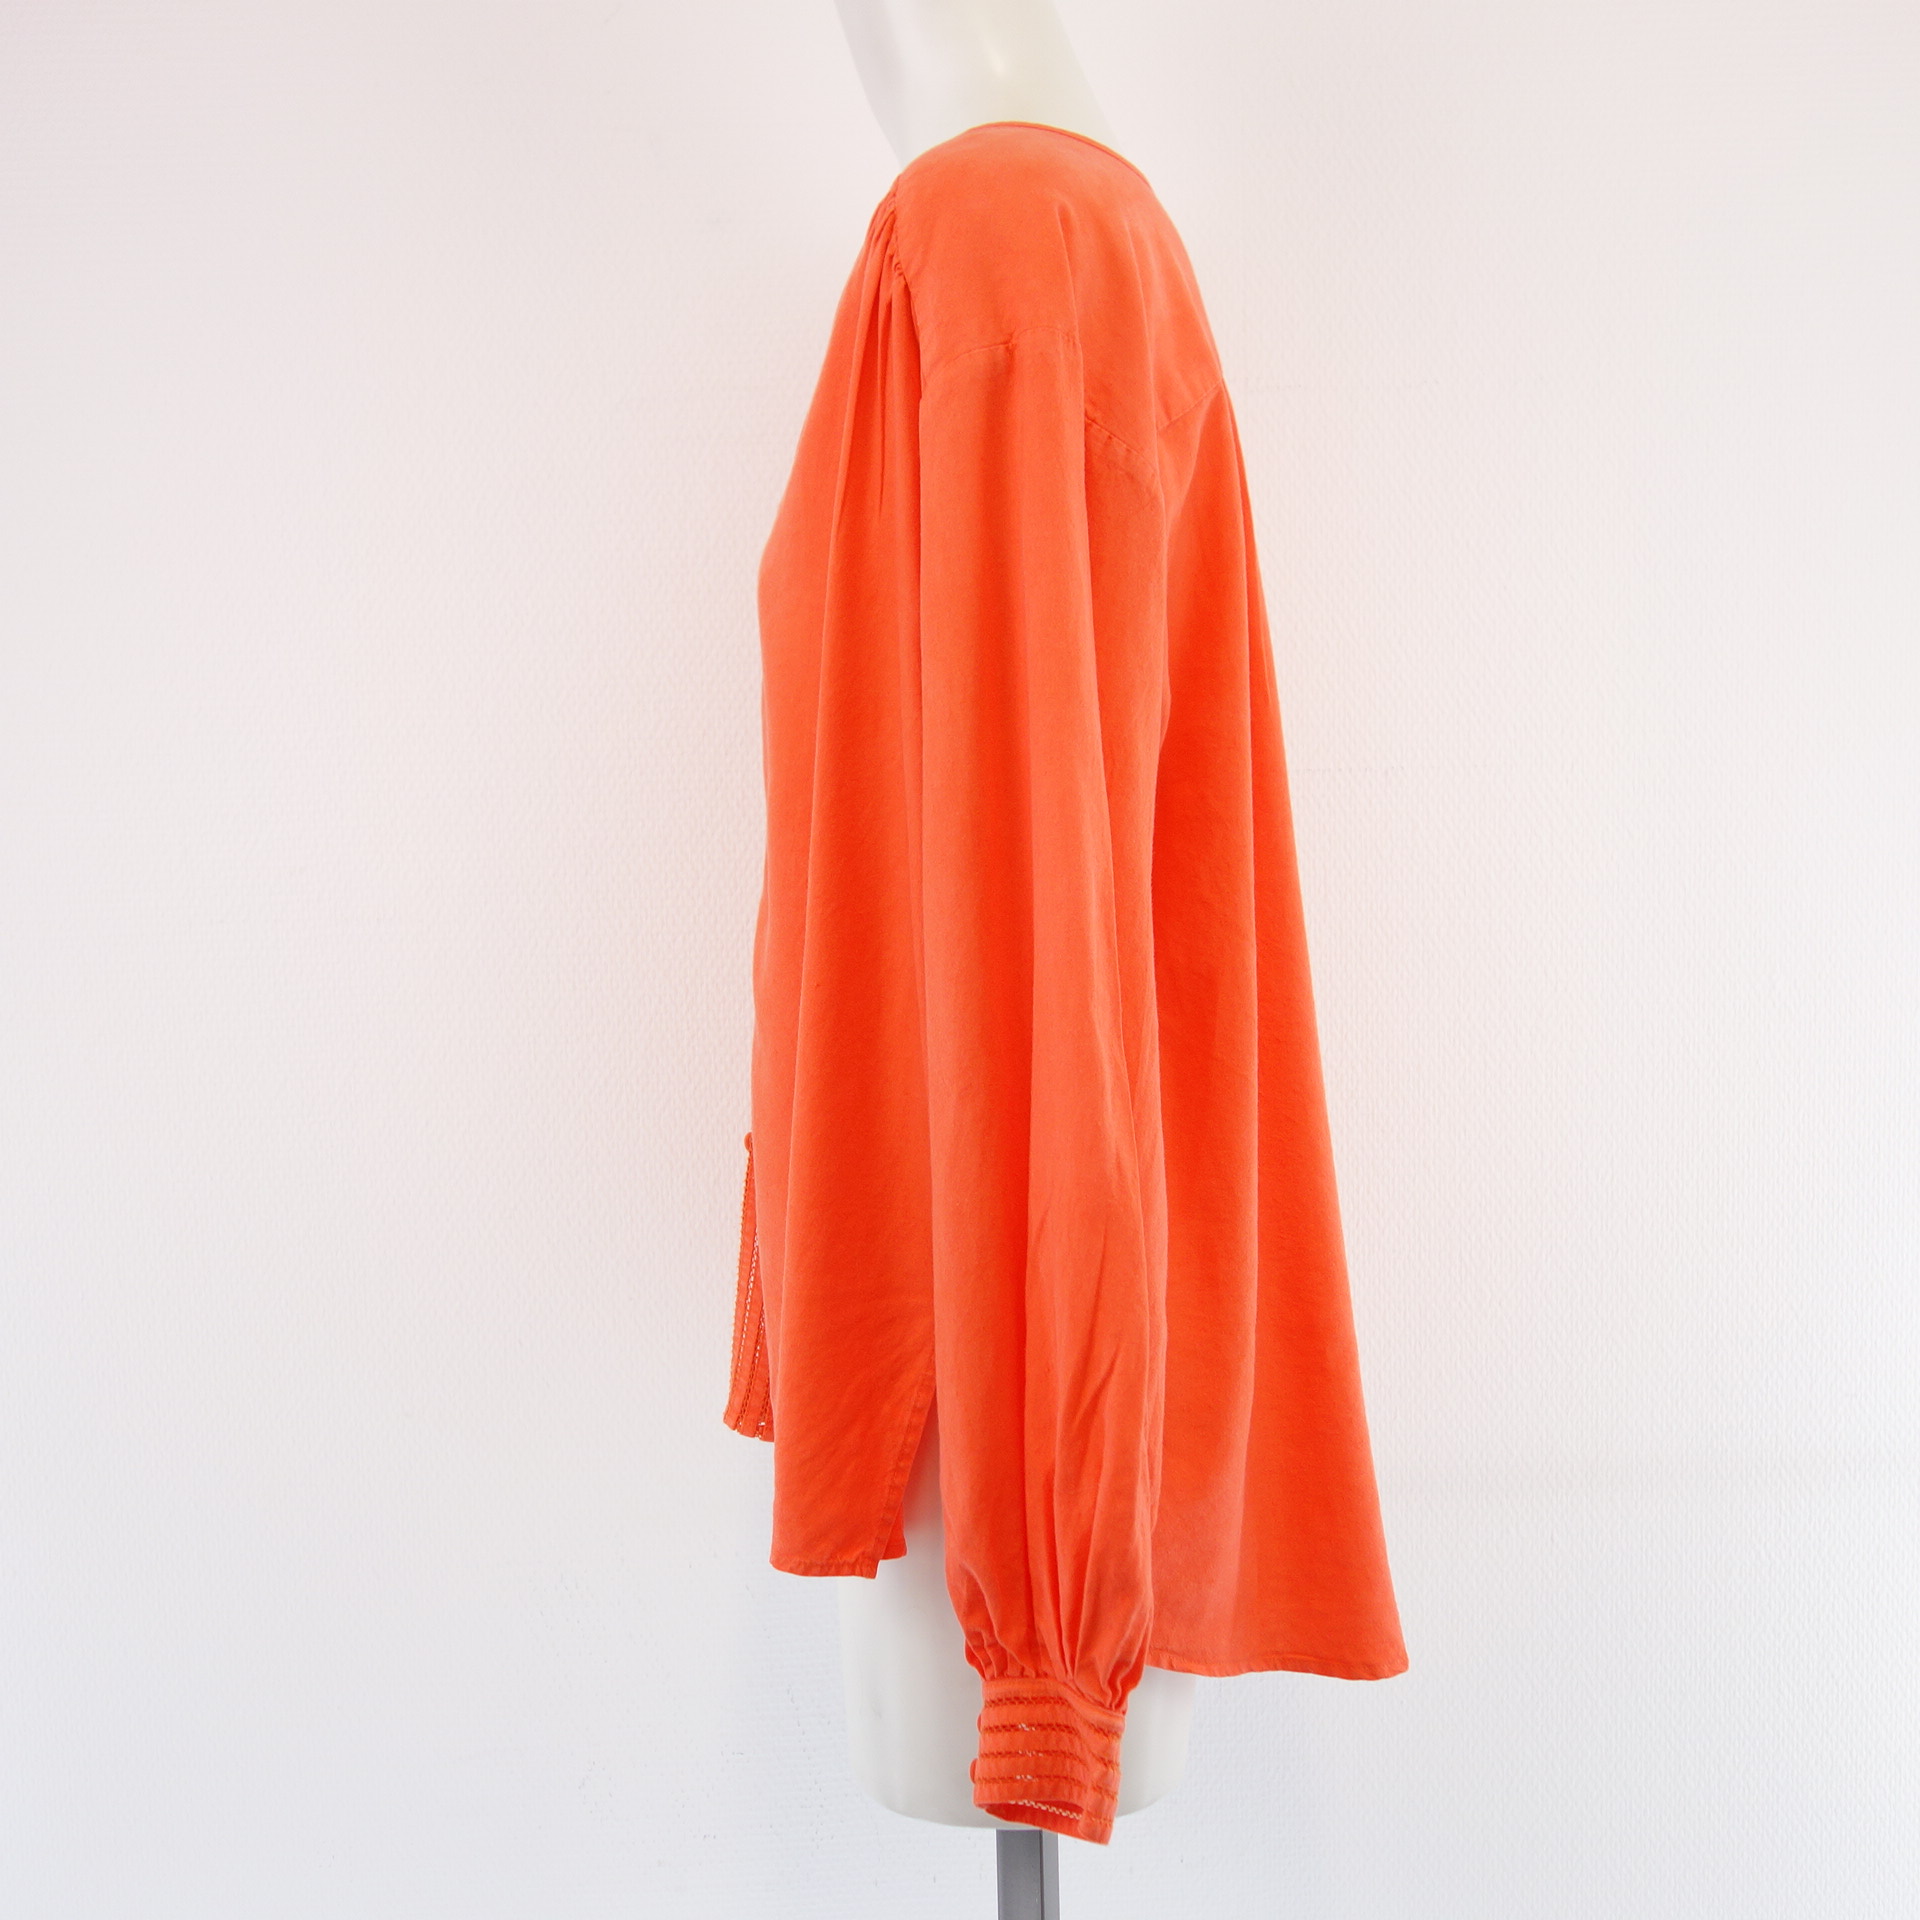 IVI Damen Bluse Tunika Hemd Oberteil Orange mit Leinen Häkelspitze